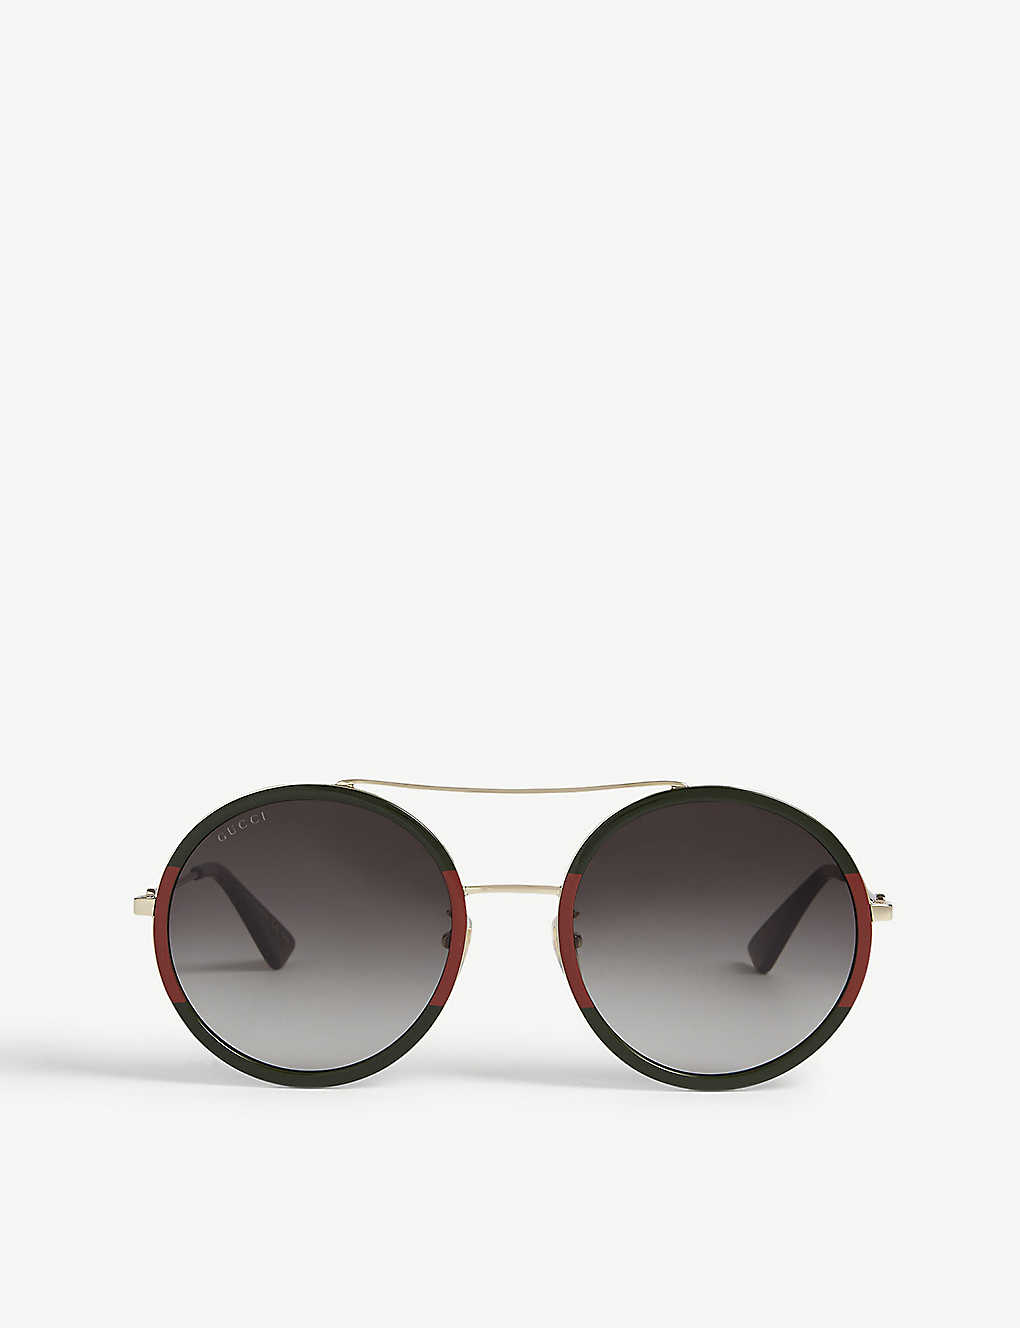 GG0061 round-frame sunglasses(7812351)